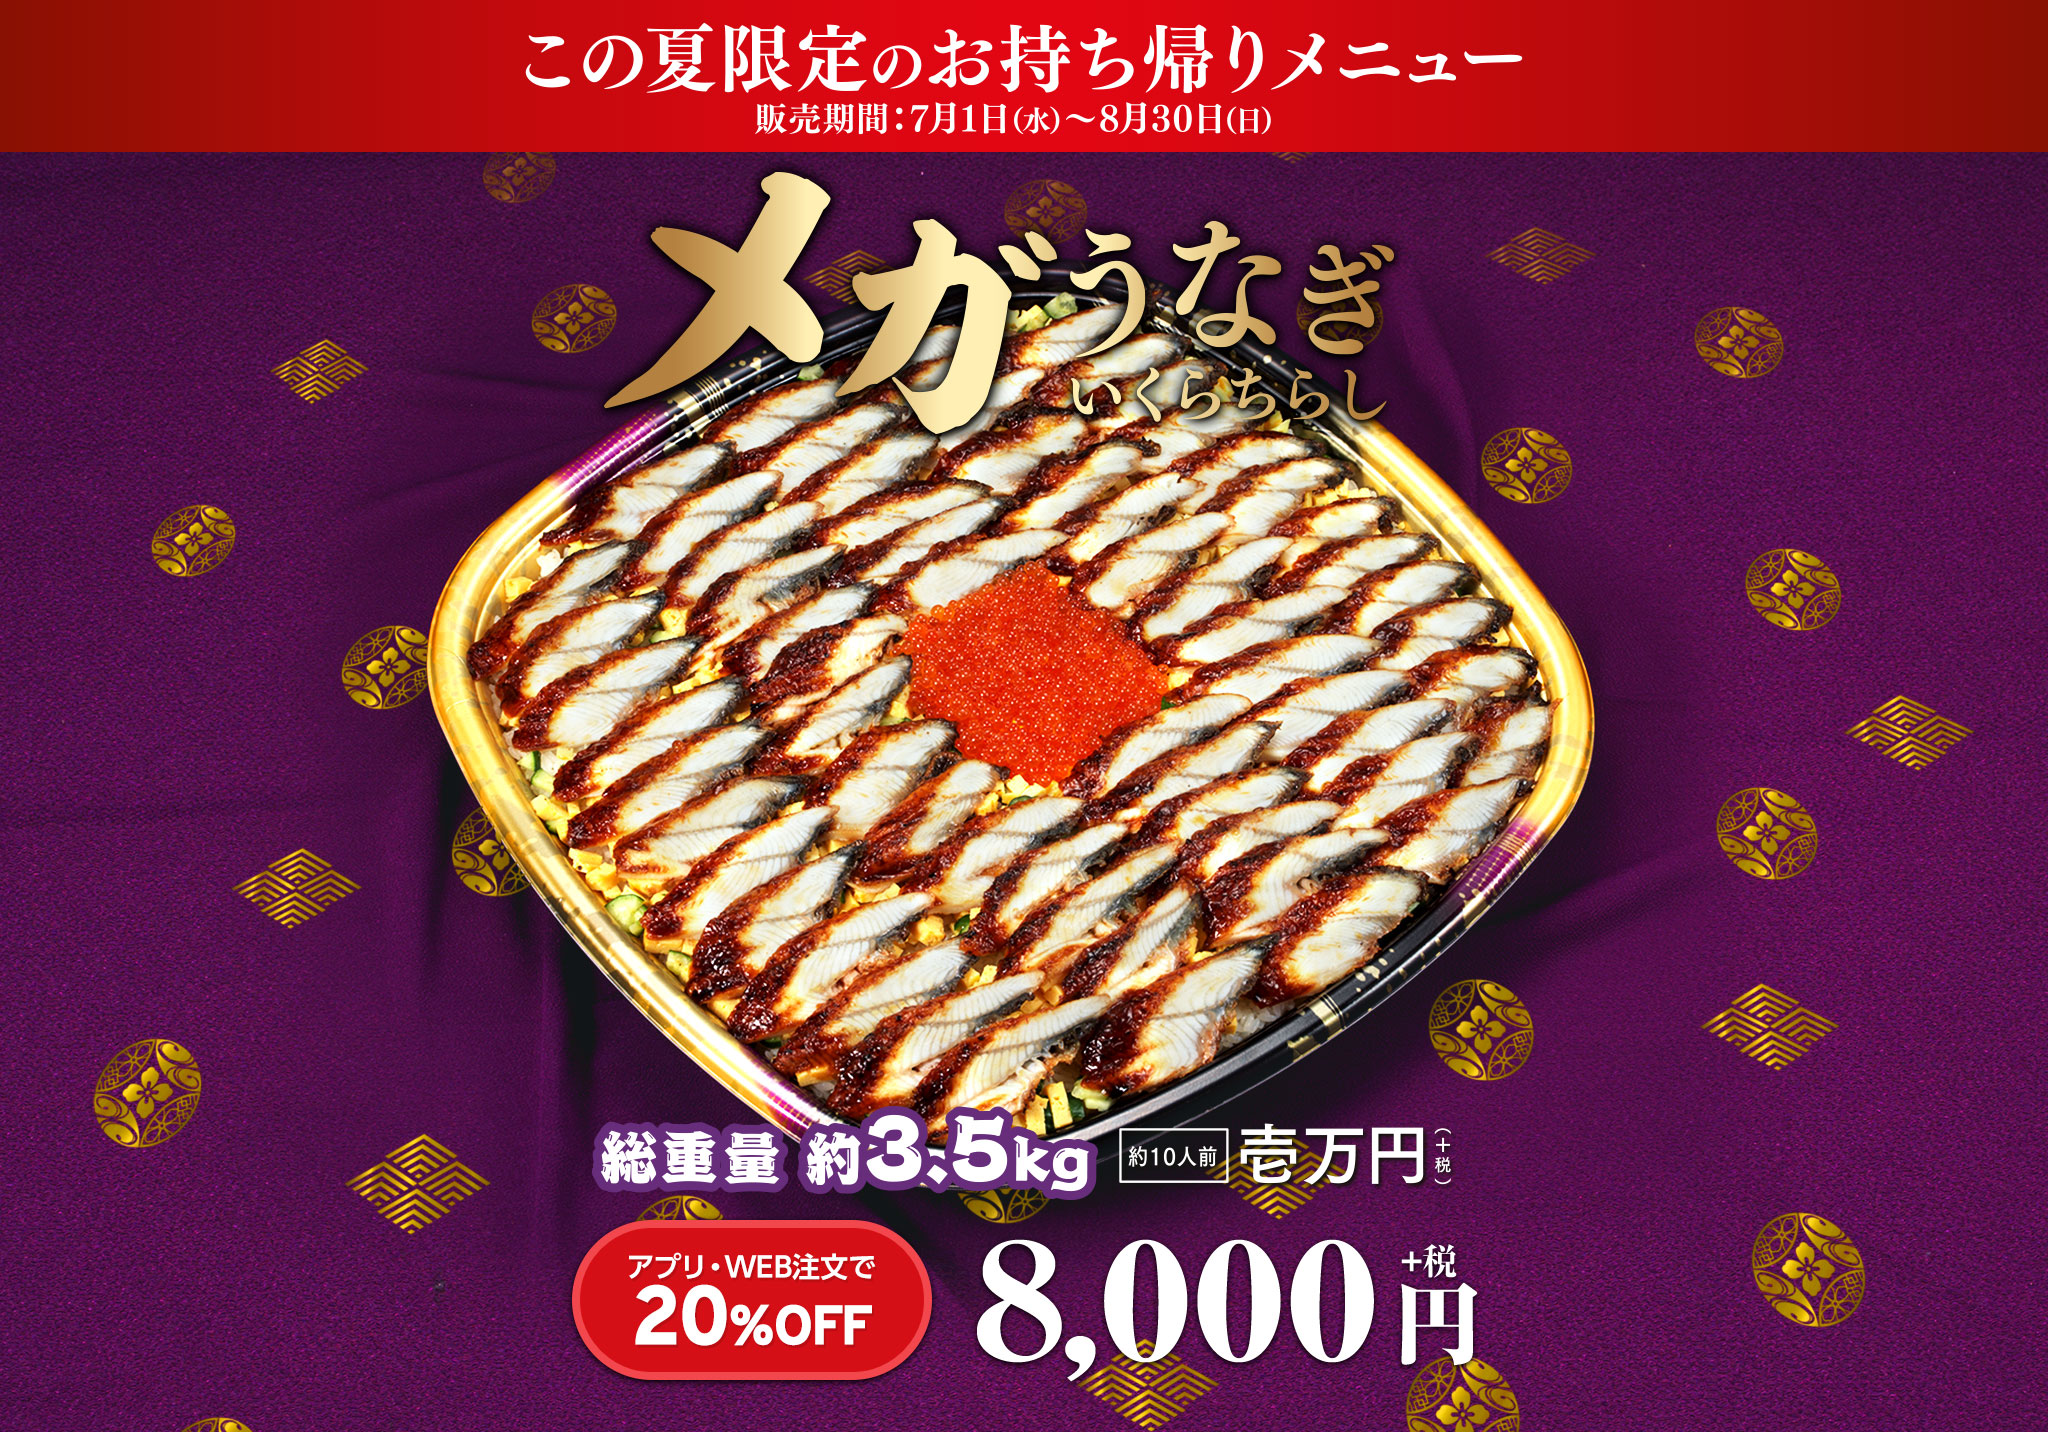 かっぱ寿司のうなぎ|価格・予約方法「1万円のメガうなぎいくらちらしを販売」